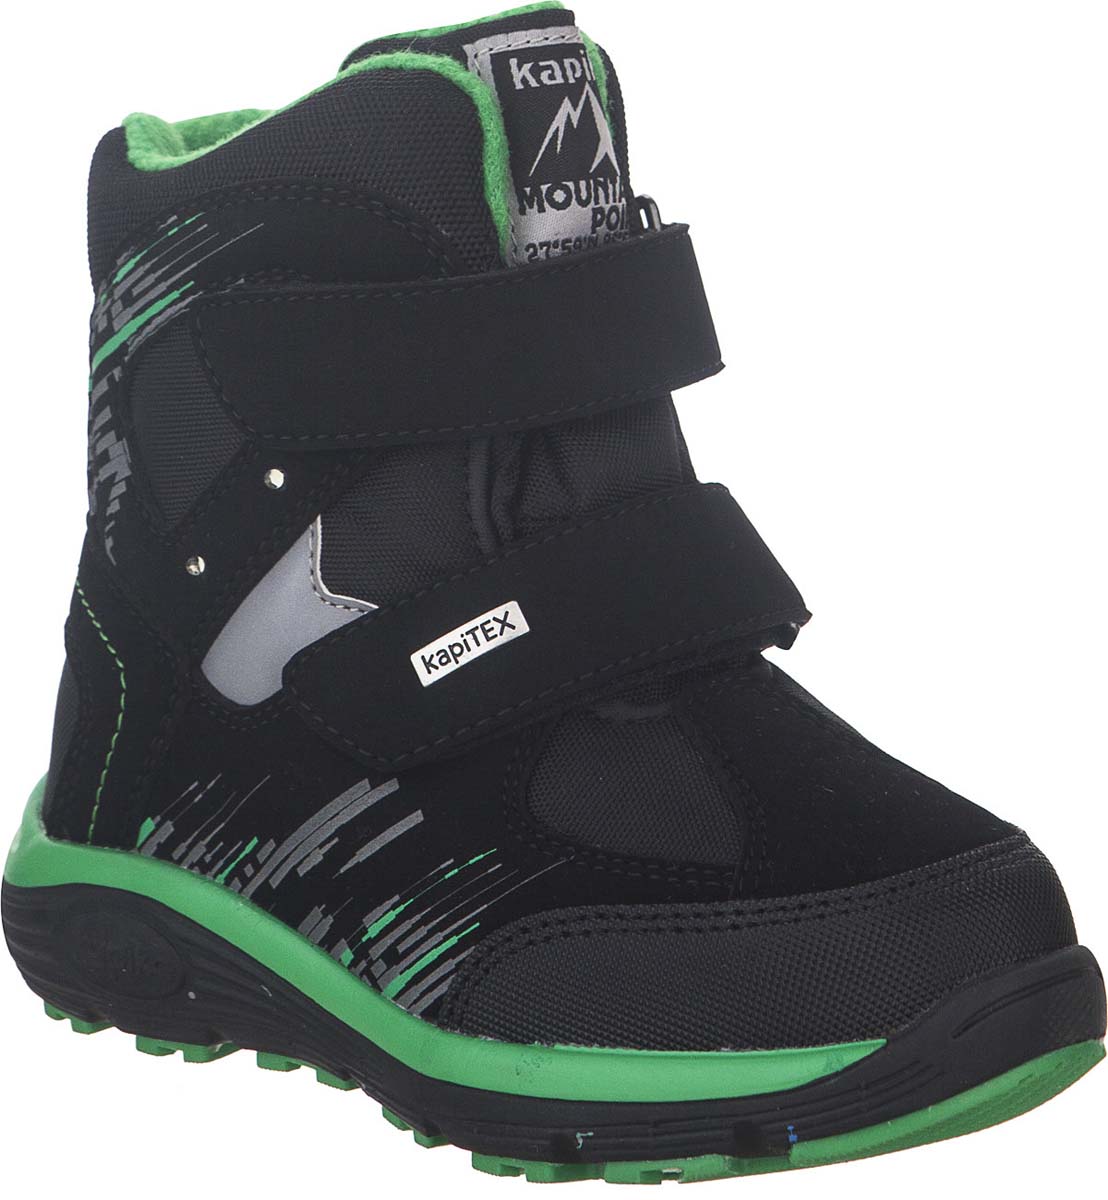 Ботинки для мальчика Kapika KapiTEX, цвет: черный, зеленый. 42234-2. Размер 32